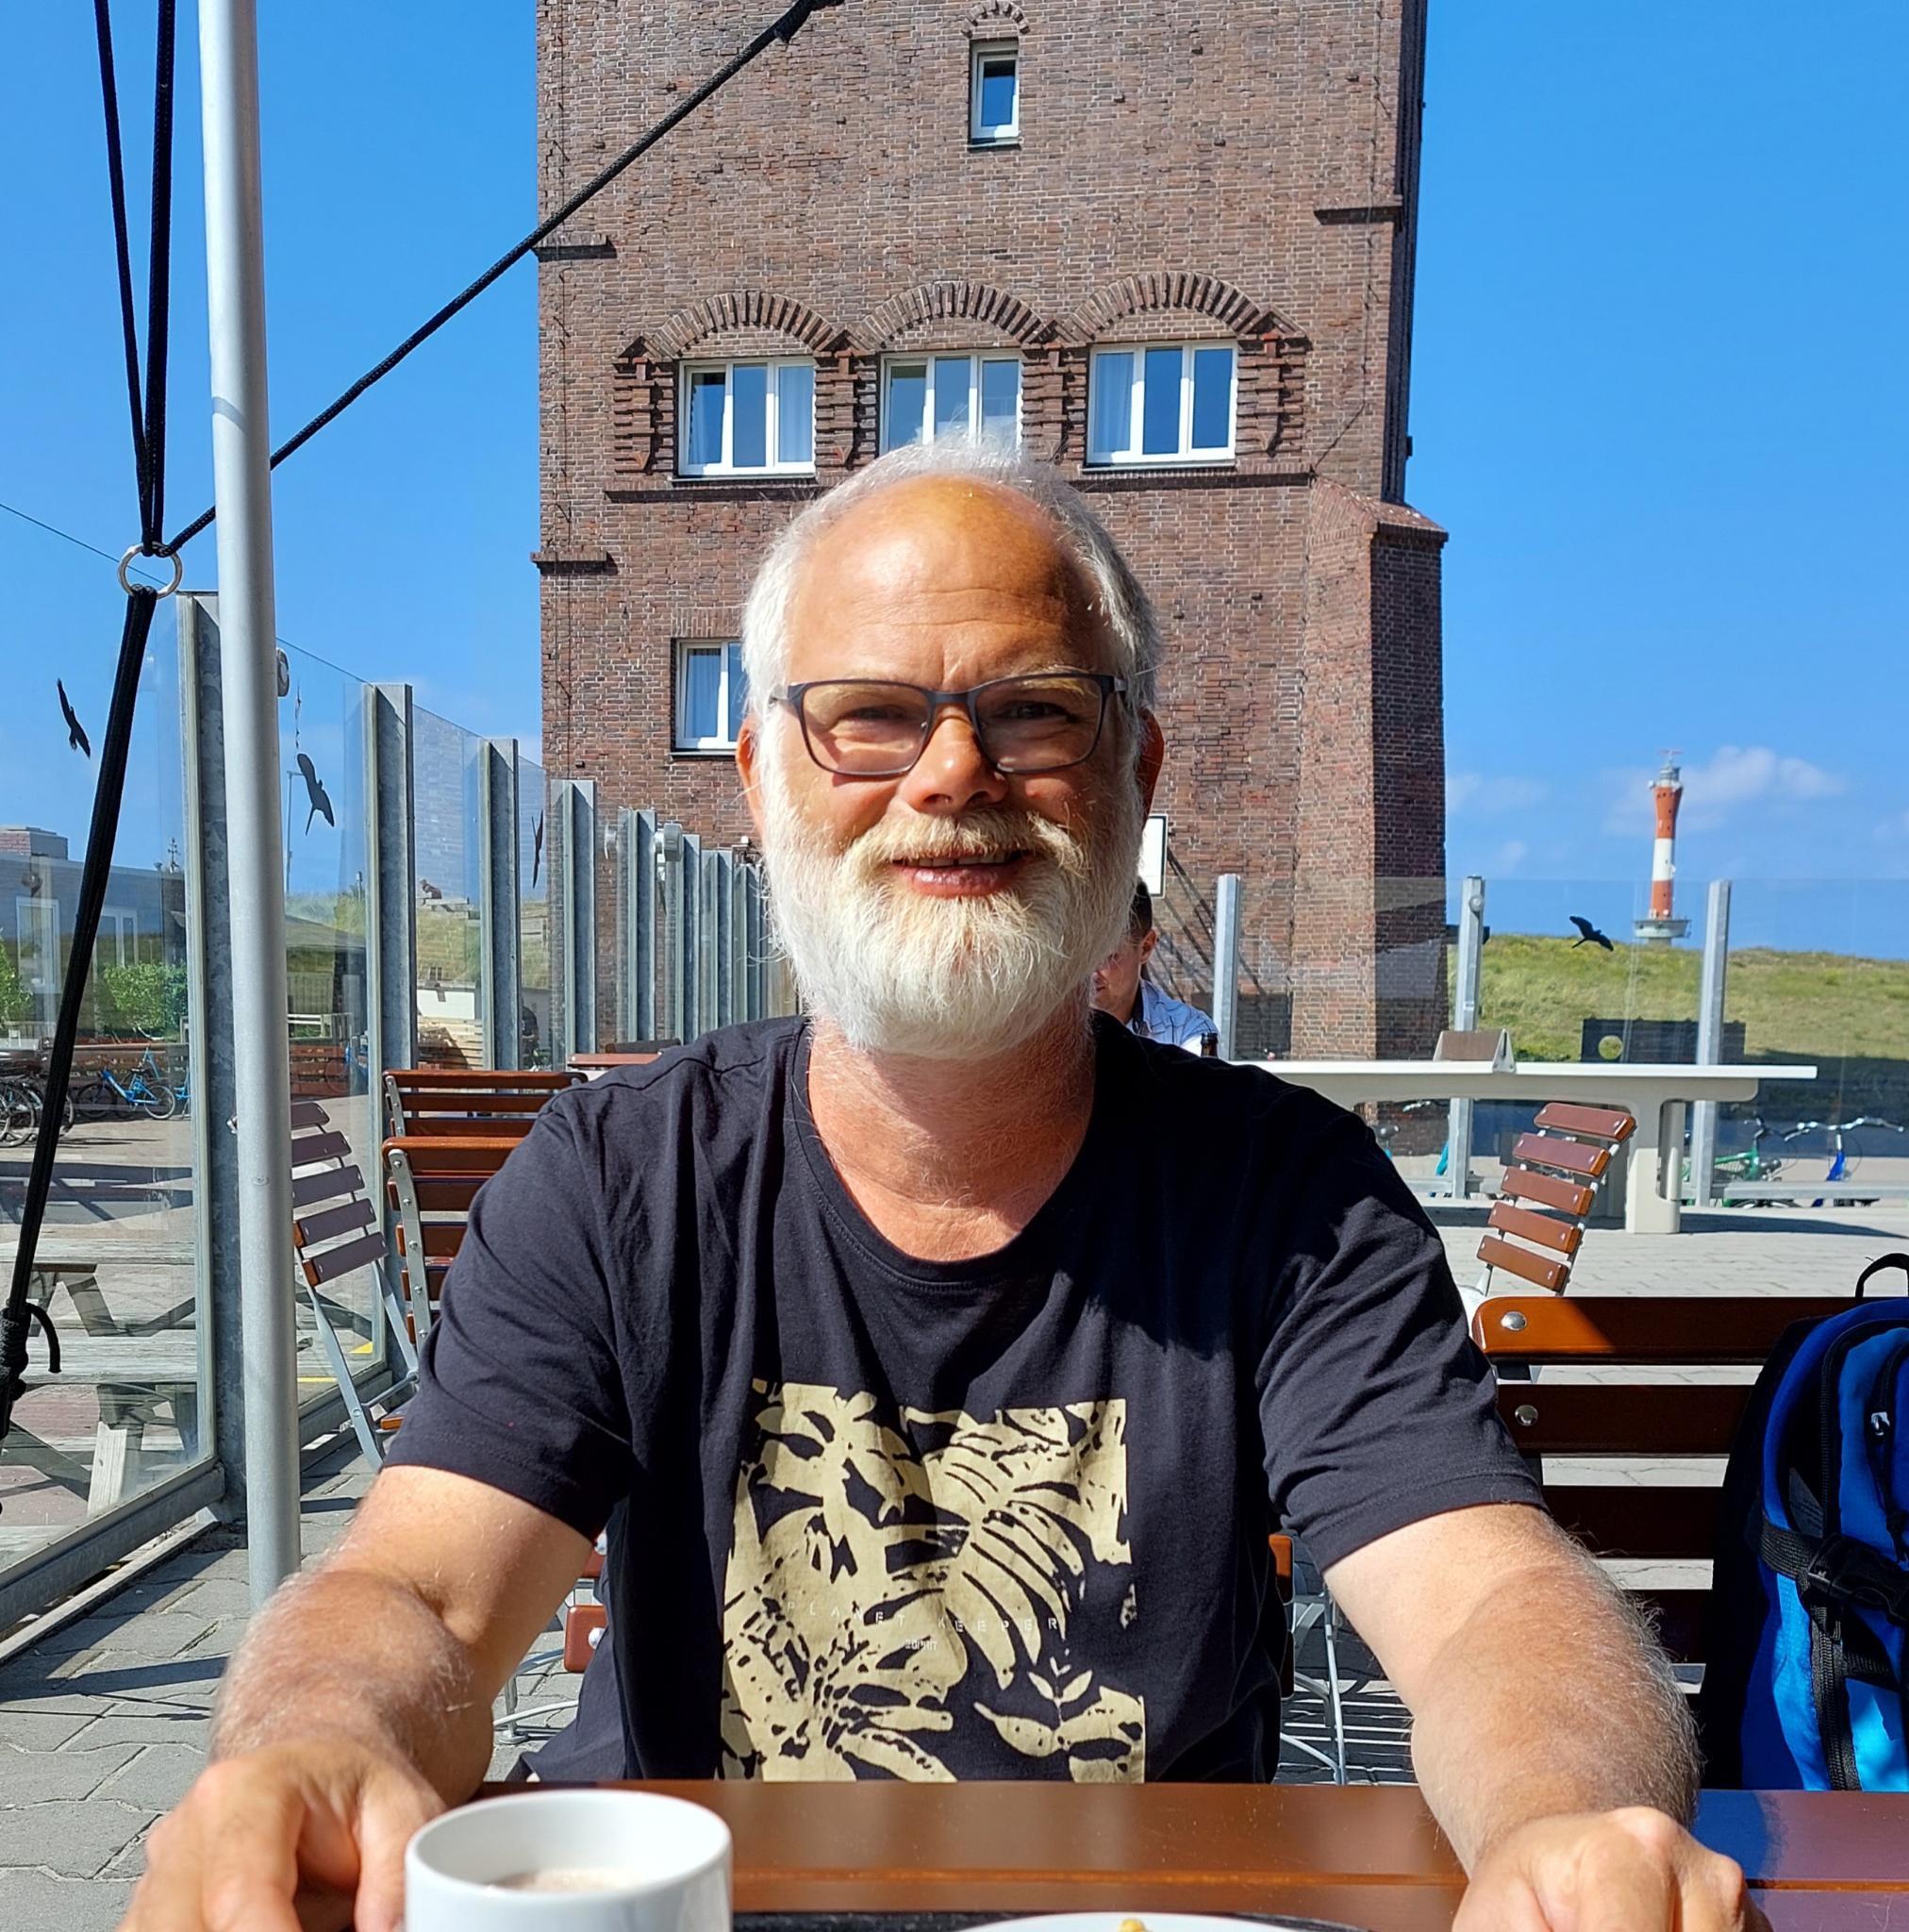 Sven mit Bart und Brille an einem sonnigen Tag vor einem Turm sitzend bei einer Tasse Kaffee